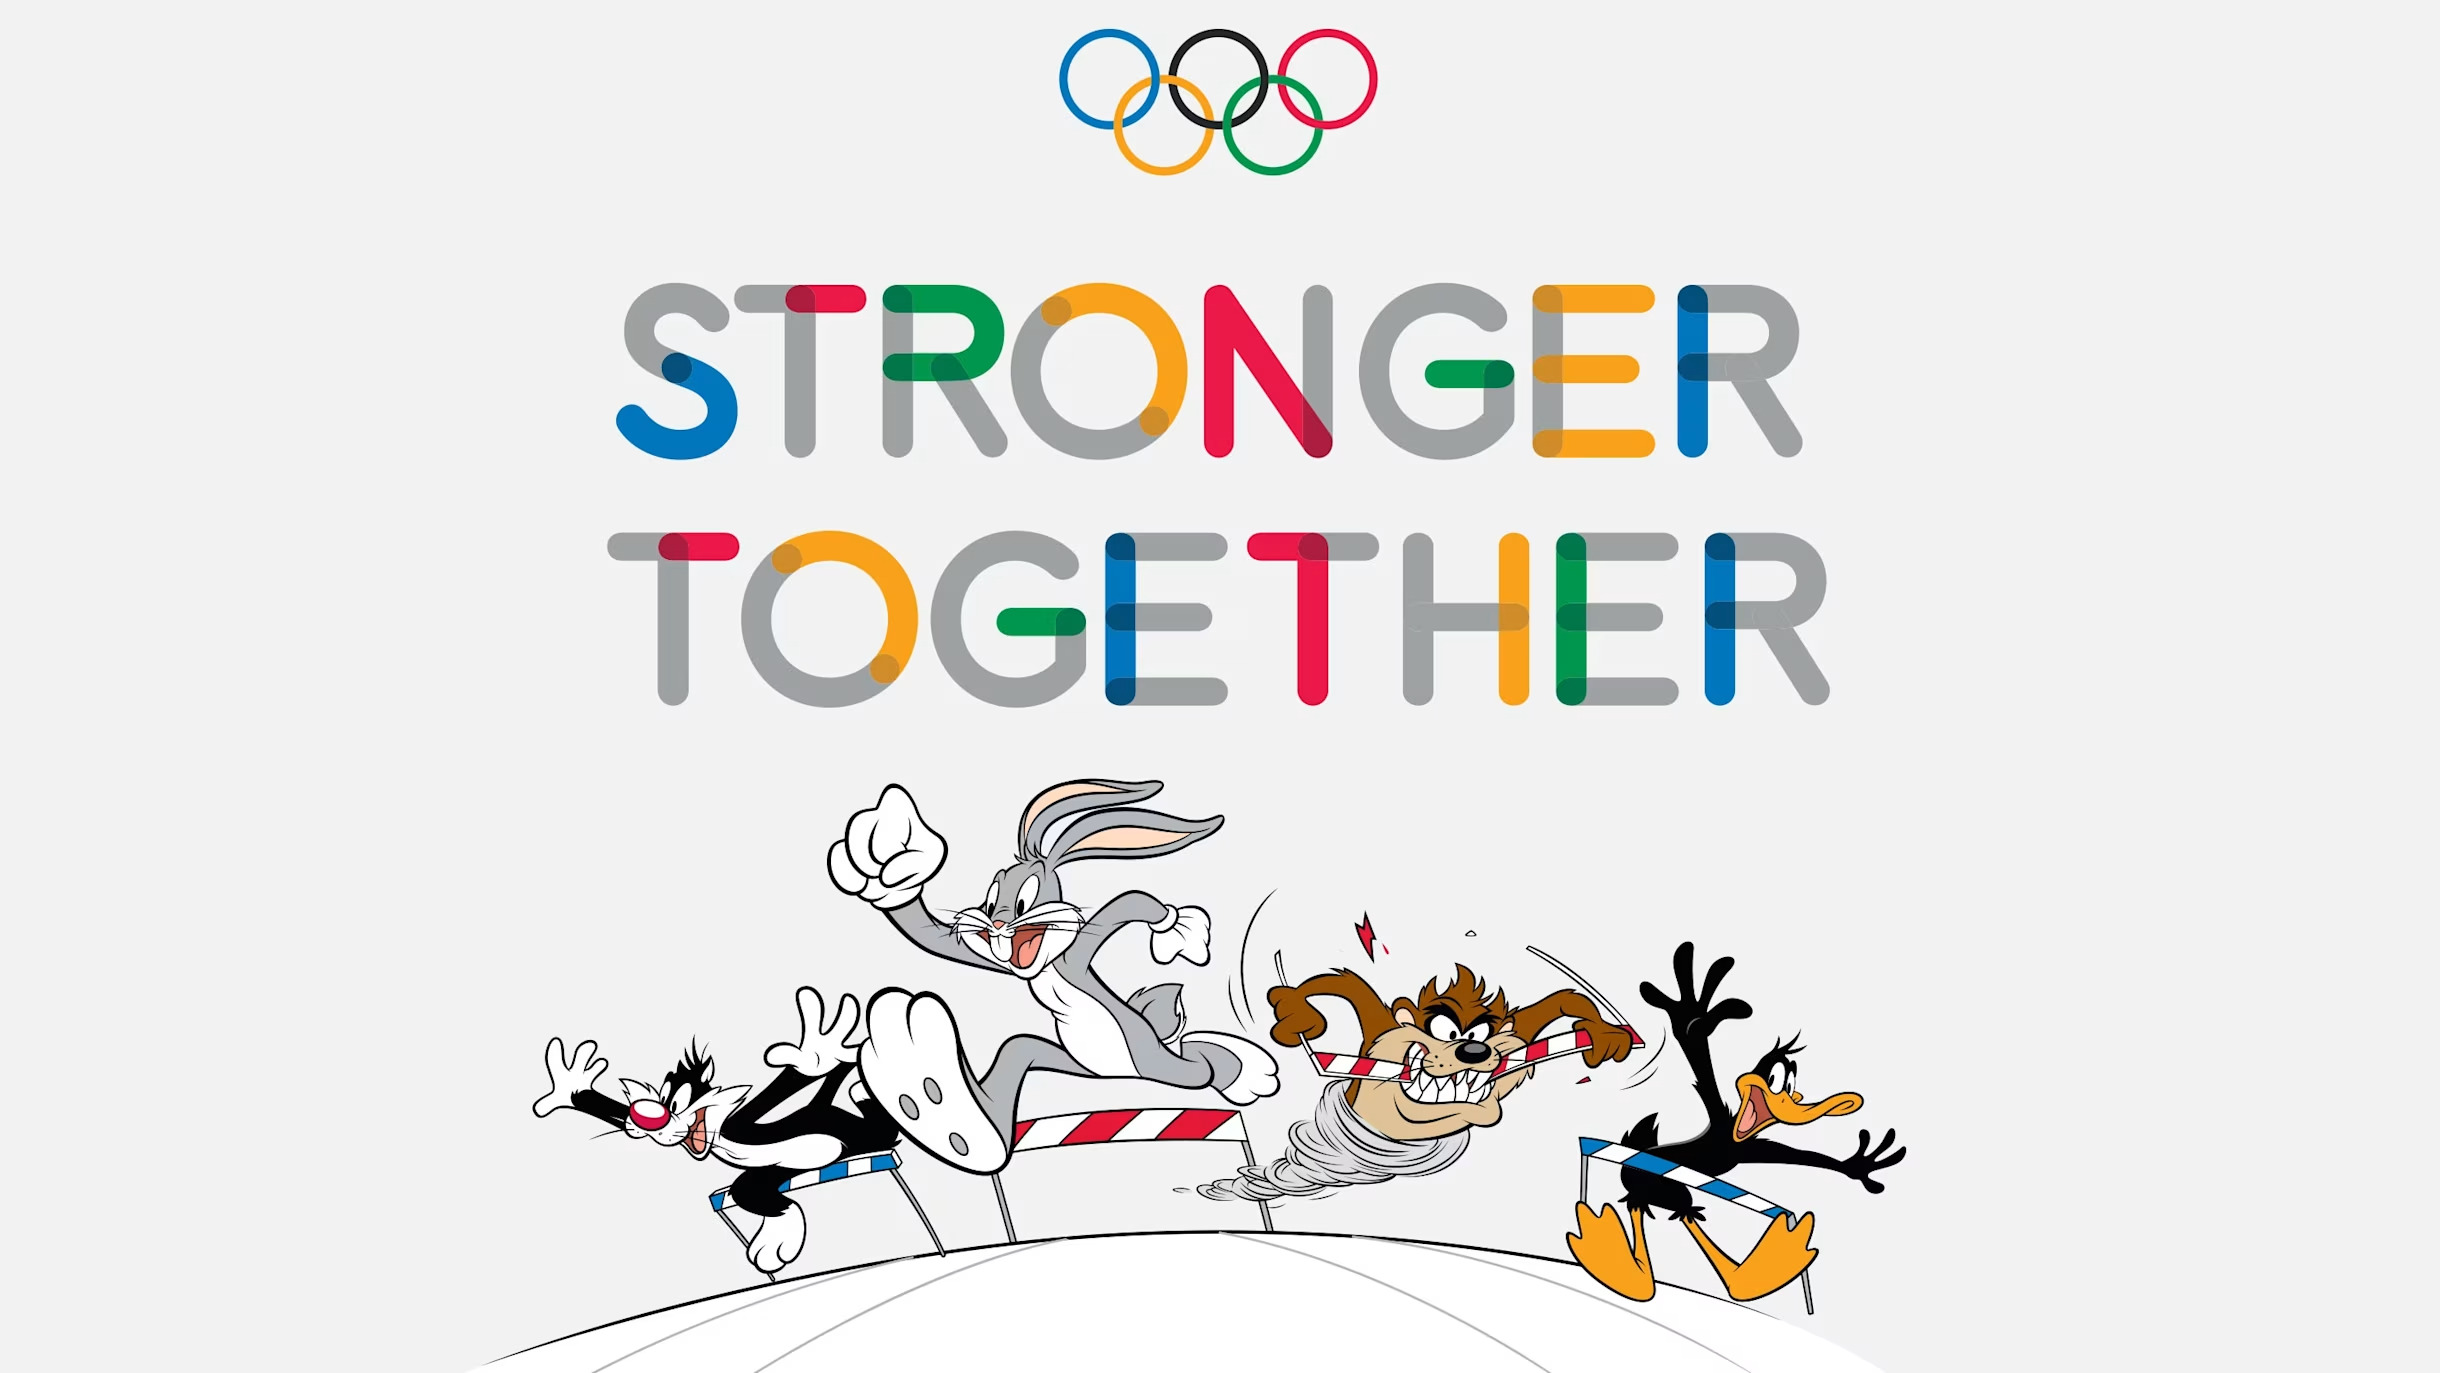 Immagine dei Looney Tunes con il logo delle olimpiadi